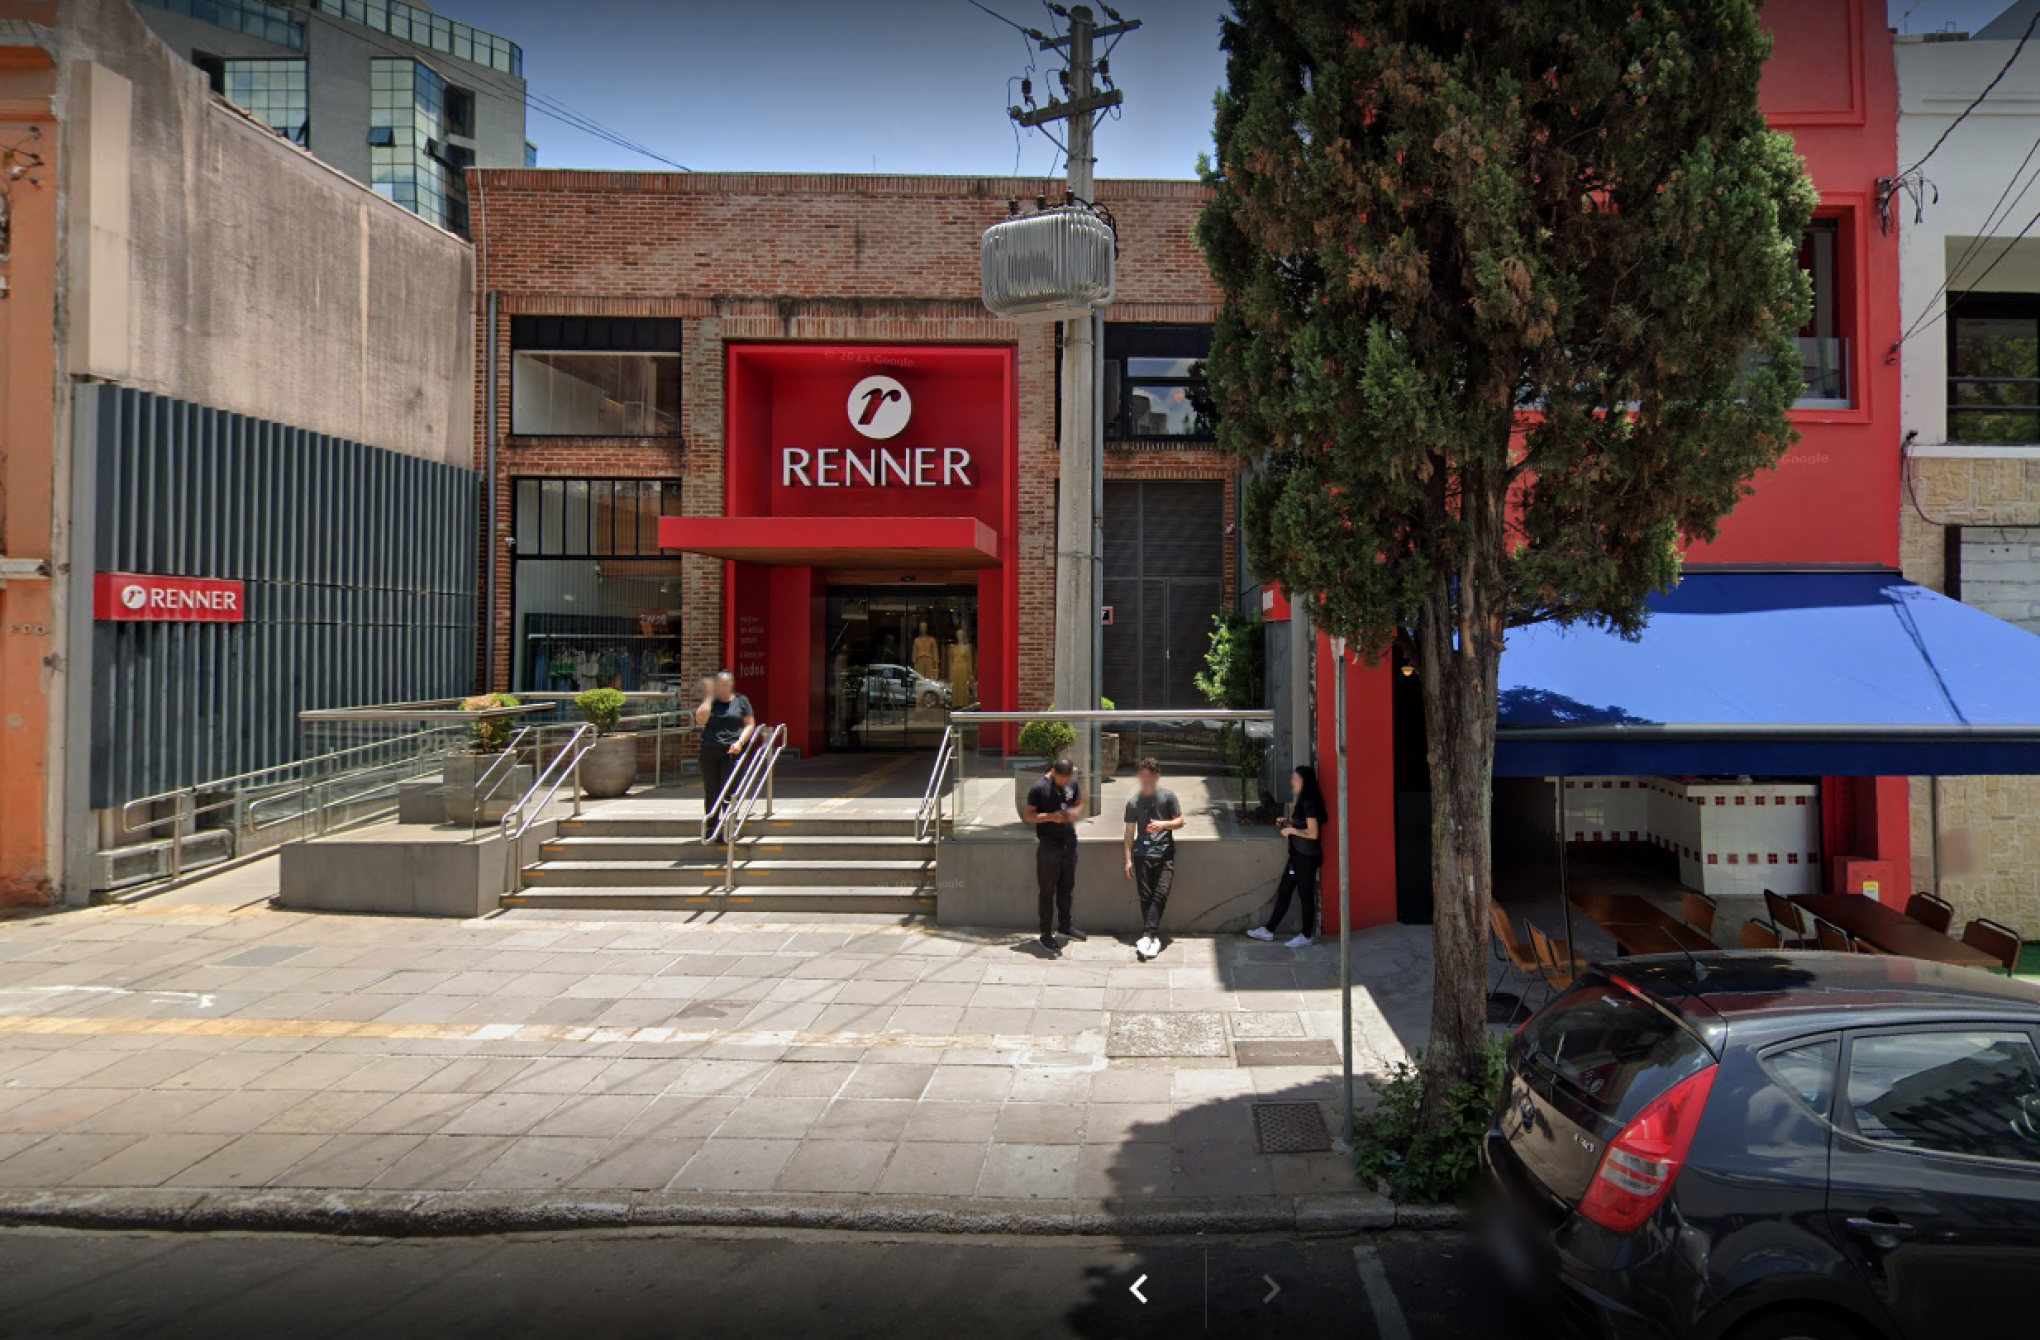 Loja conceito da Renner será fechada nesta semana; saiba onde